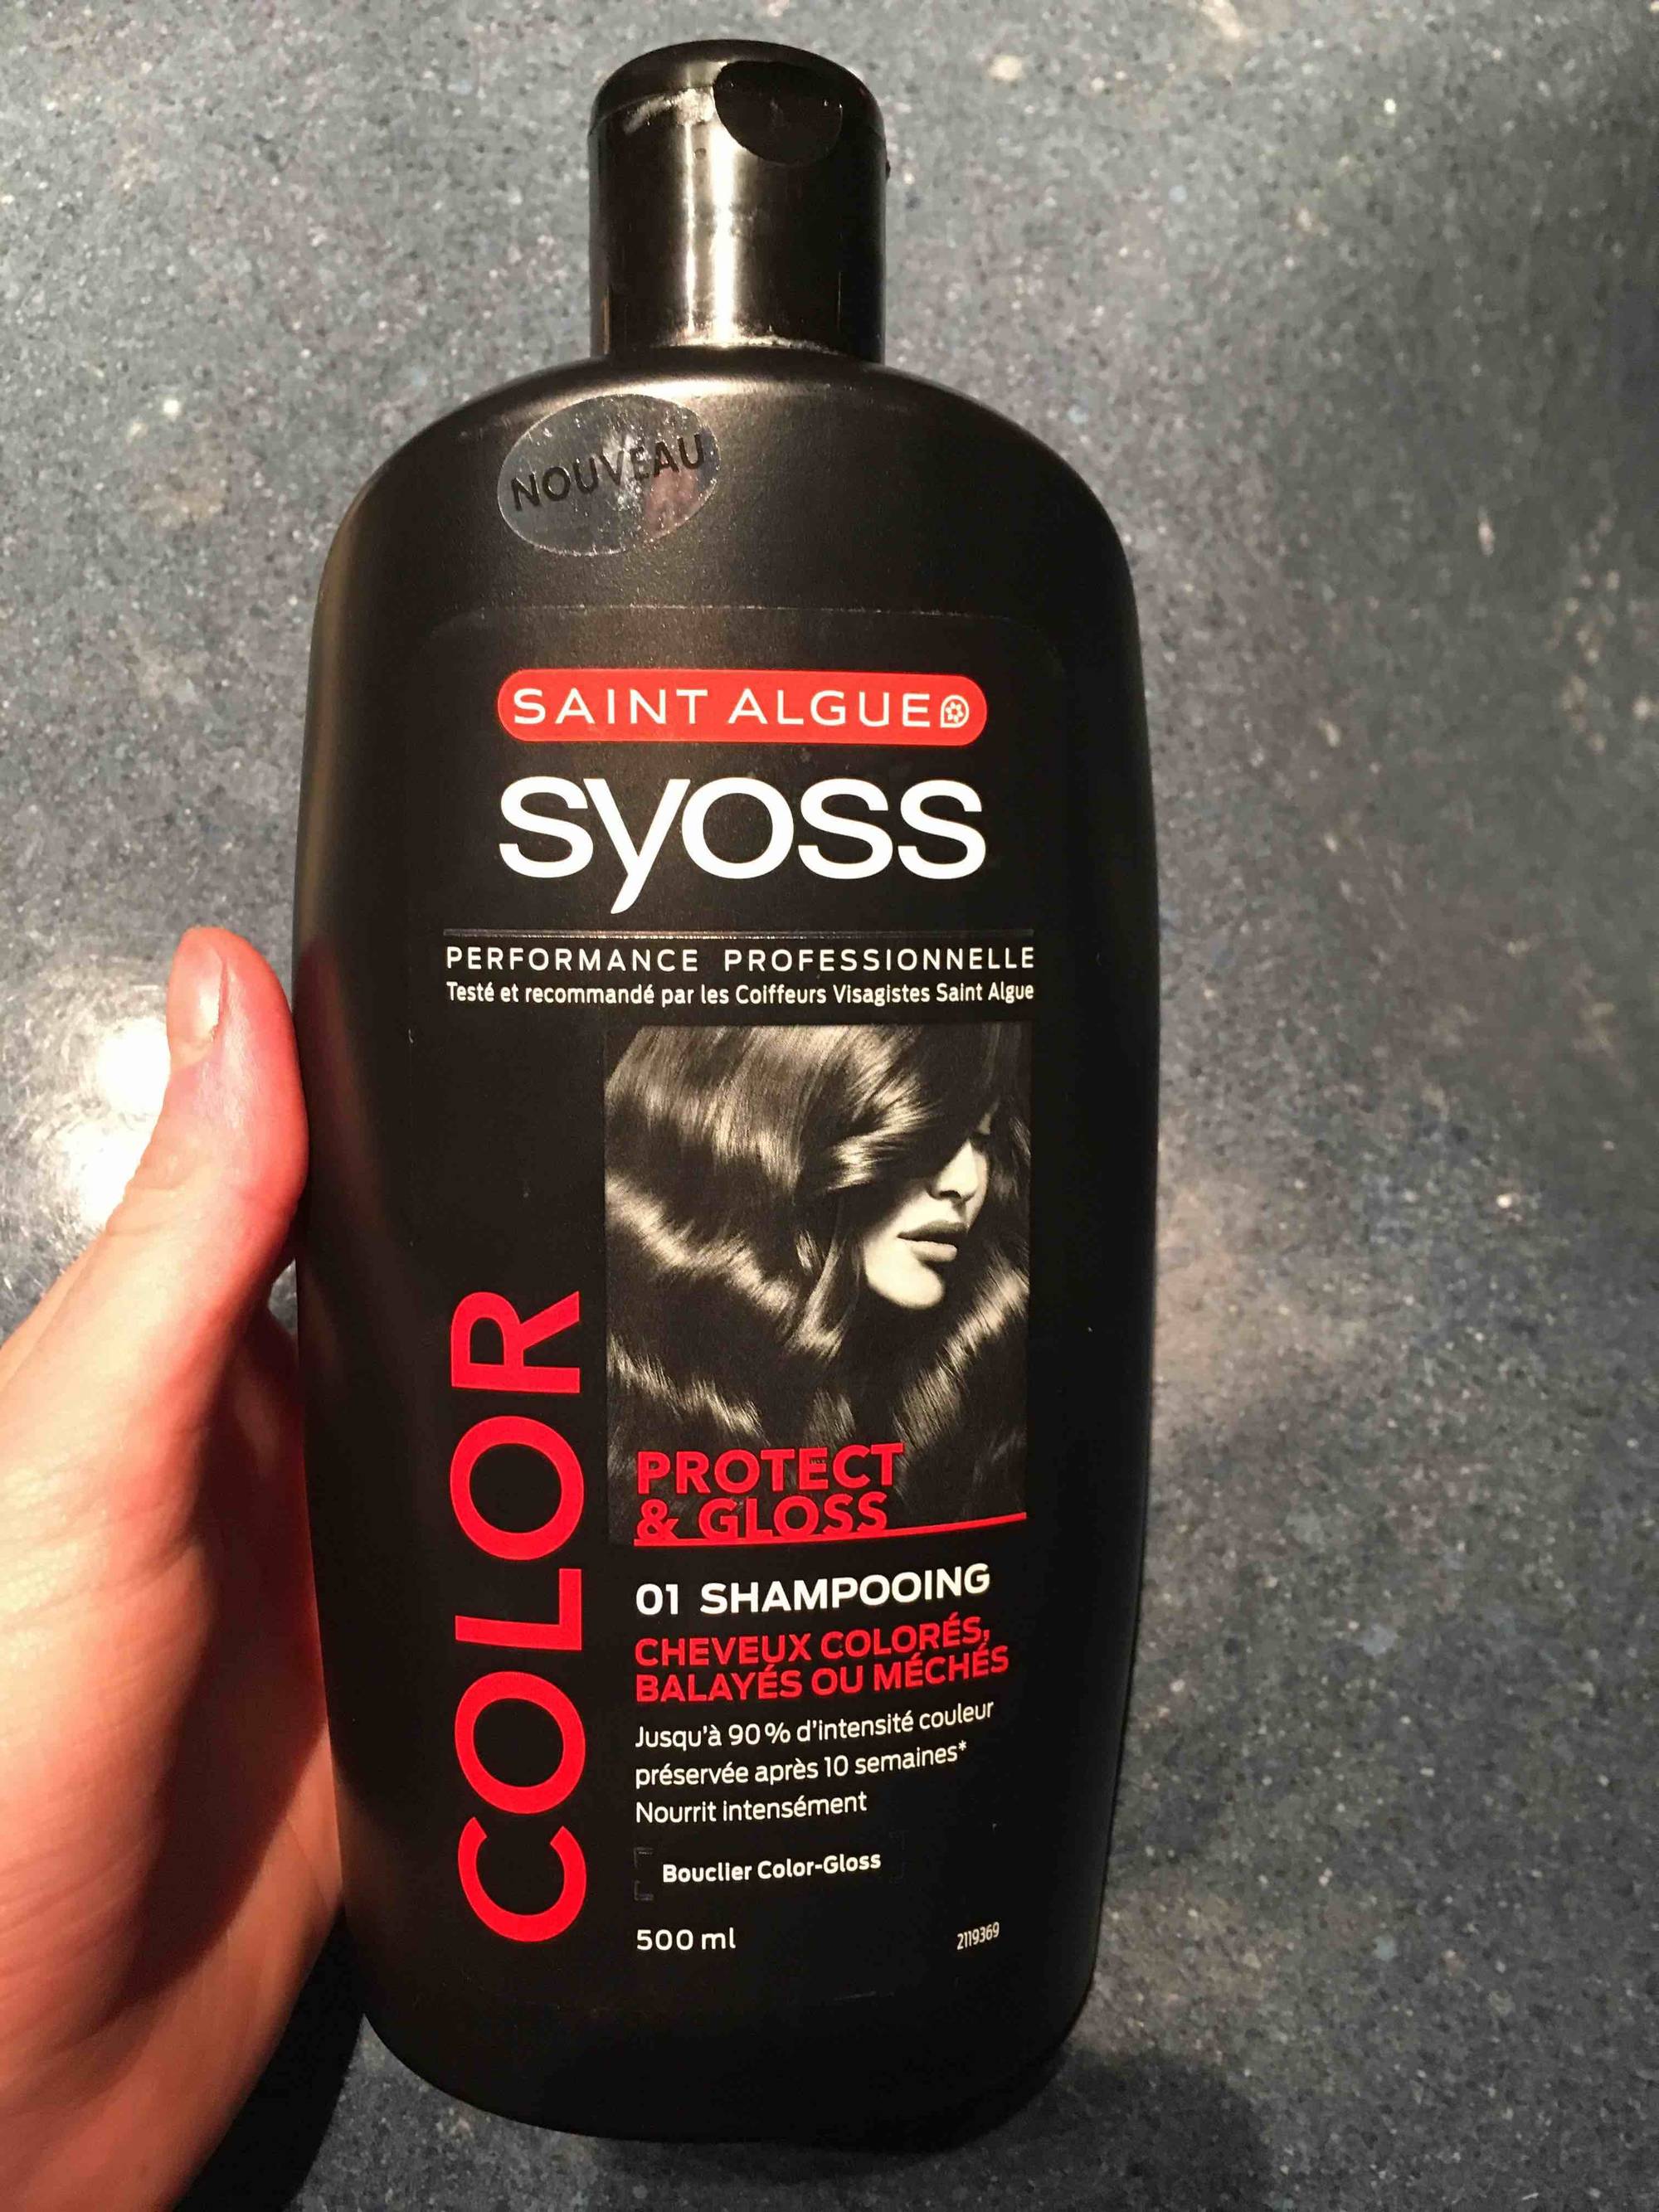 SAINT ALGUE - Syoss color protect & gloss - 01 Shampooing cheveux colorés